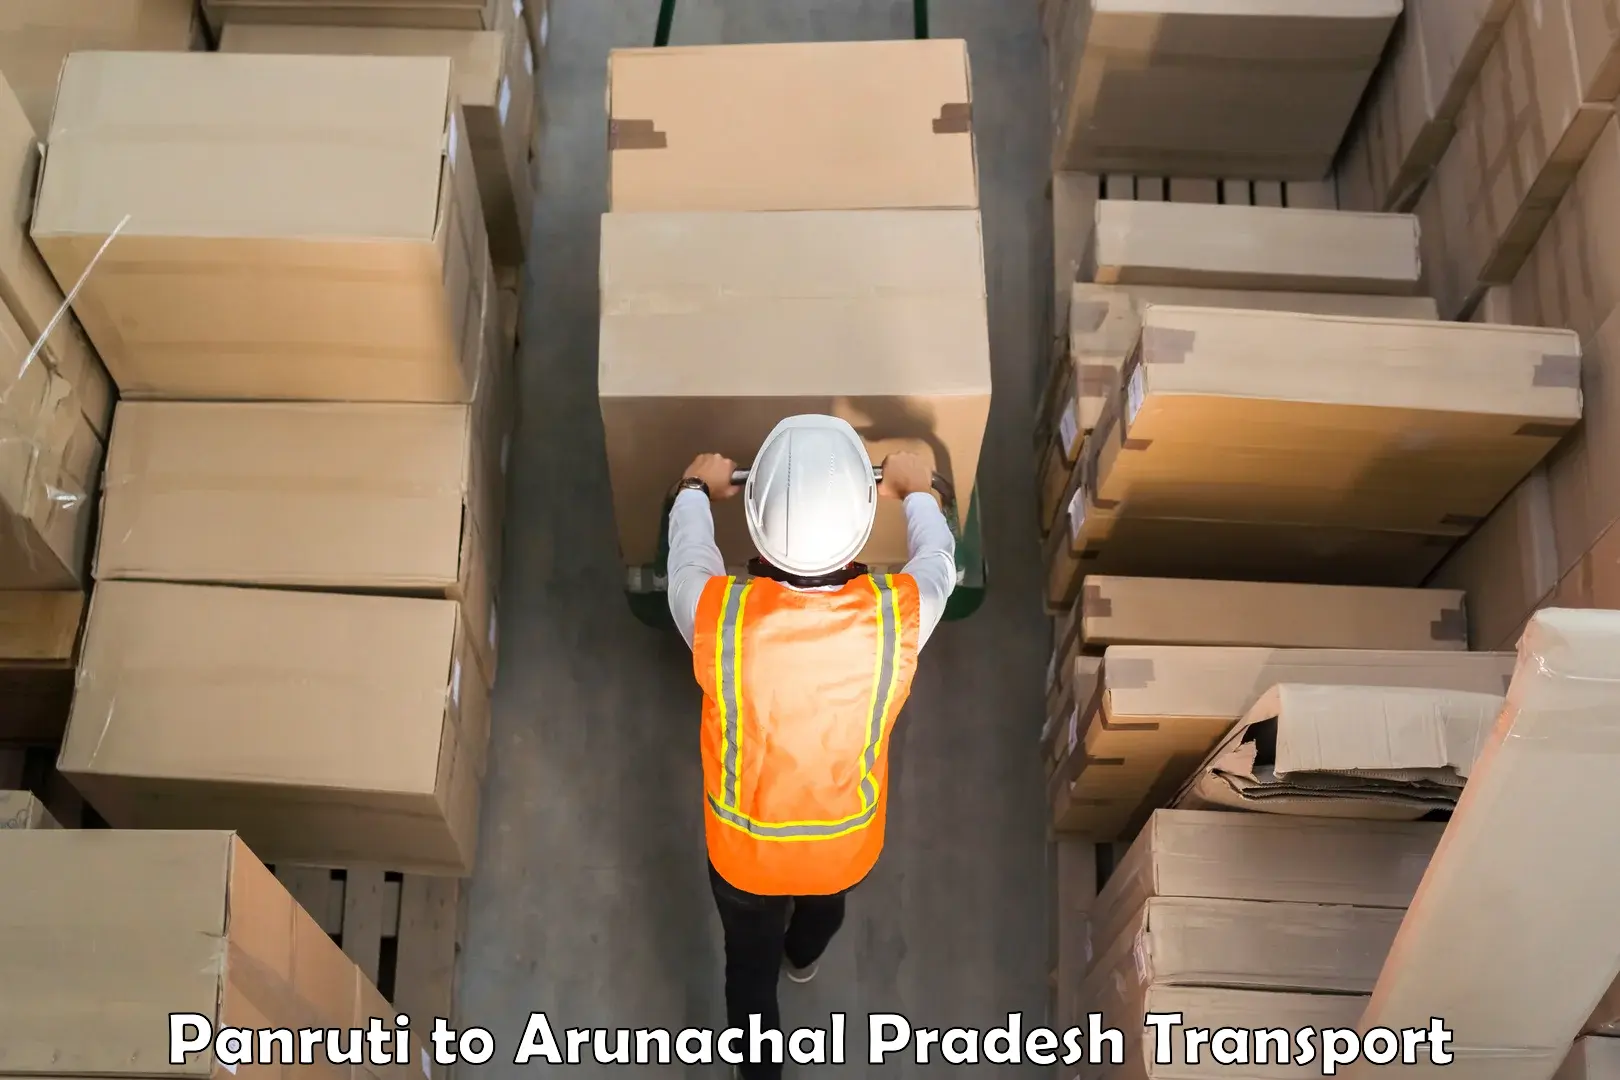 Furniture transport service Panruti to Arunachal Pradesh